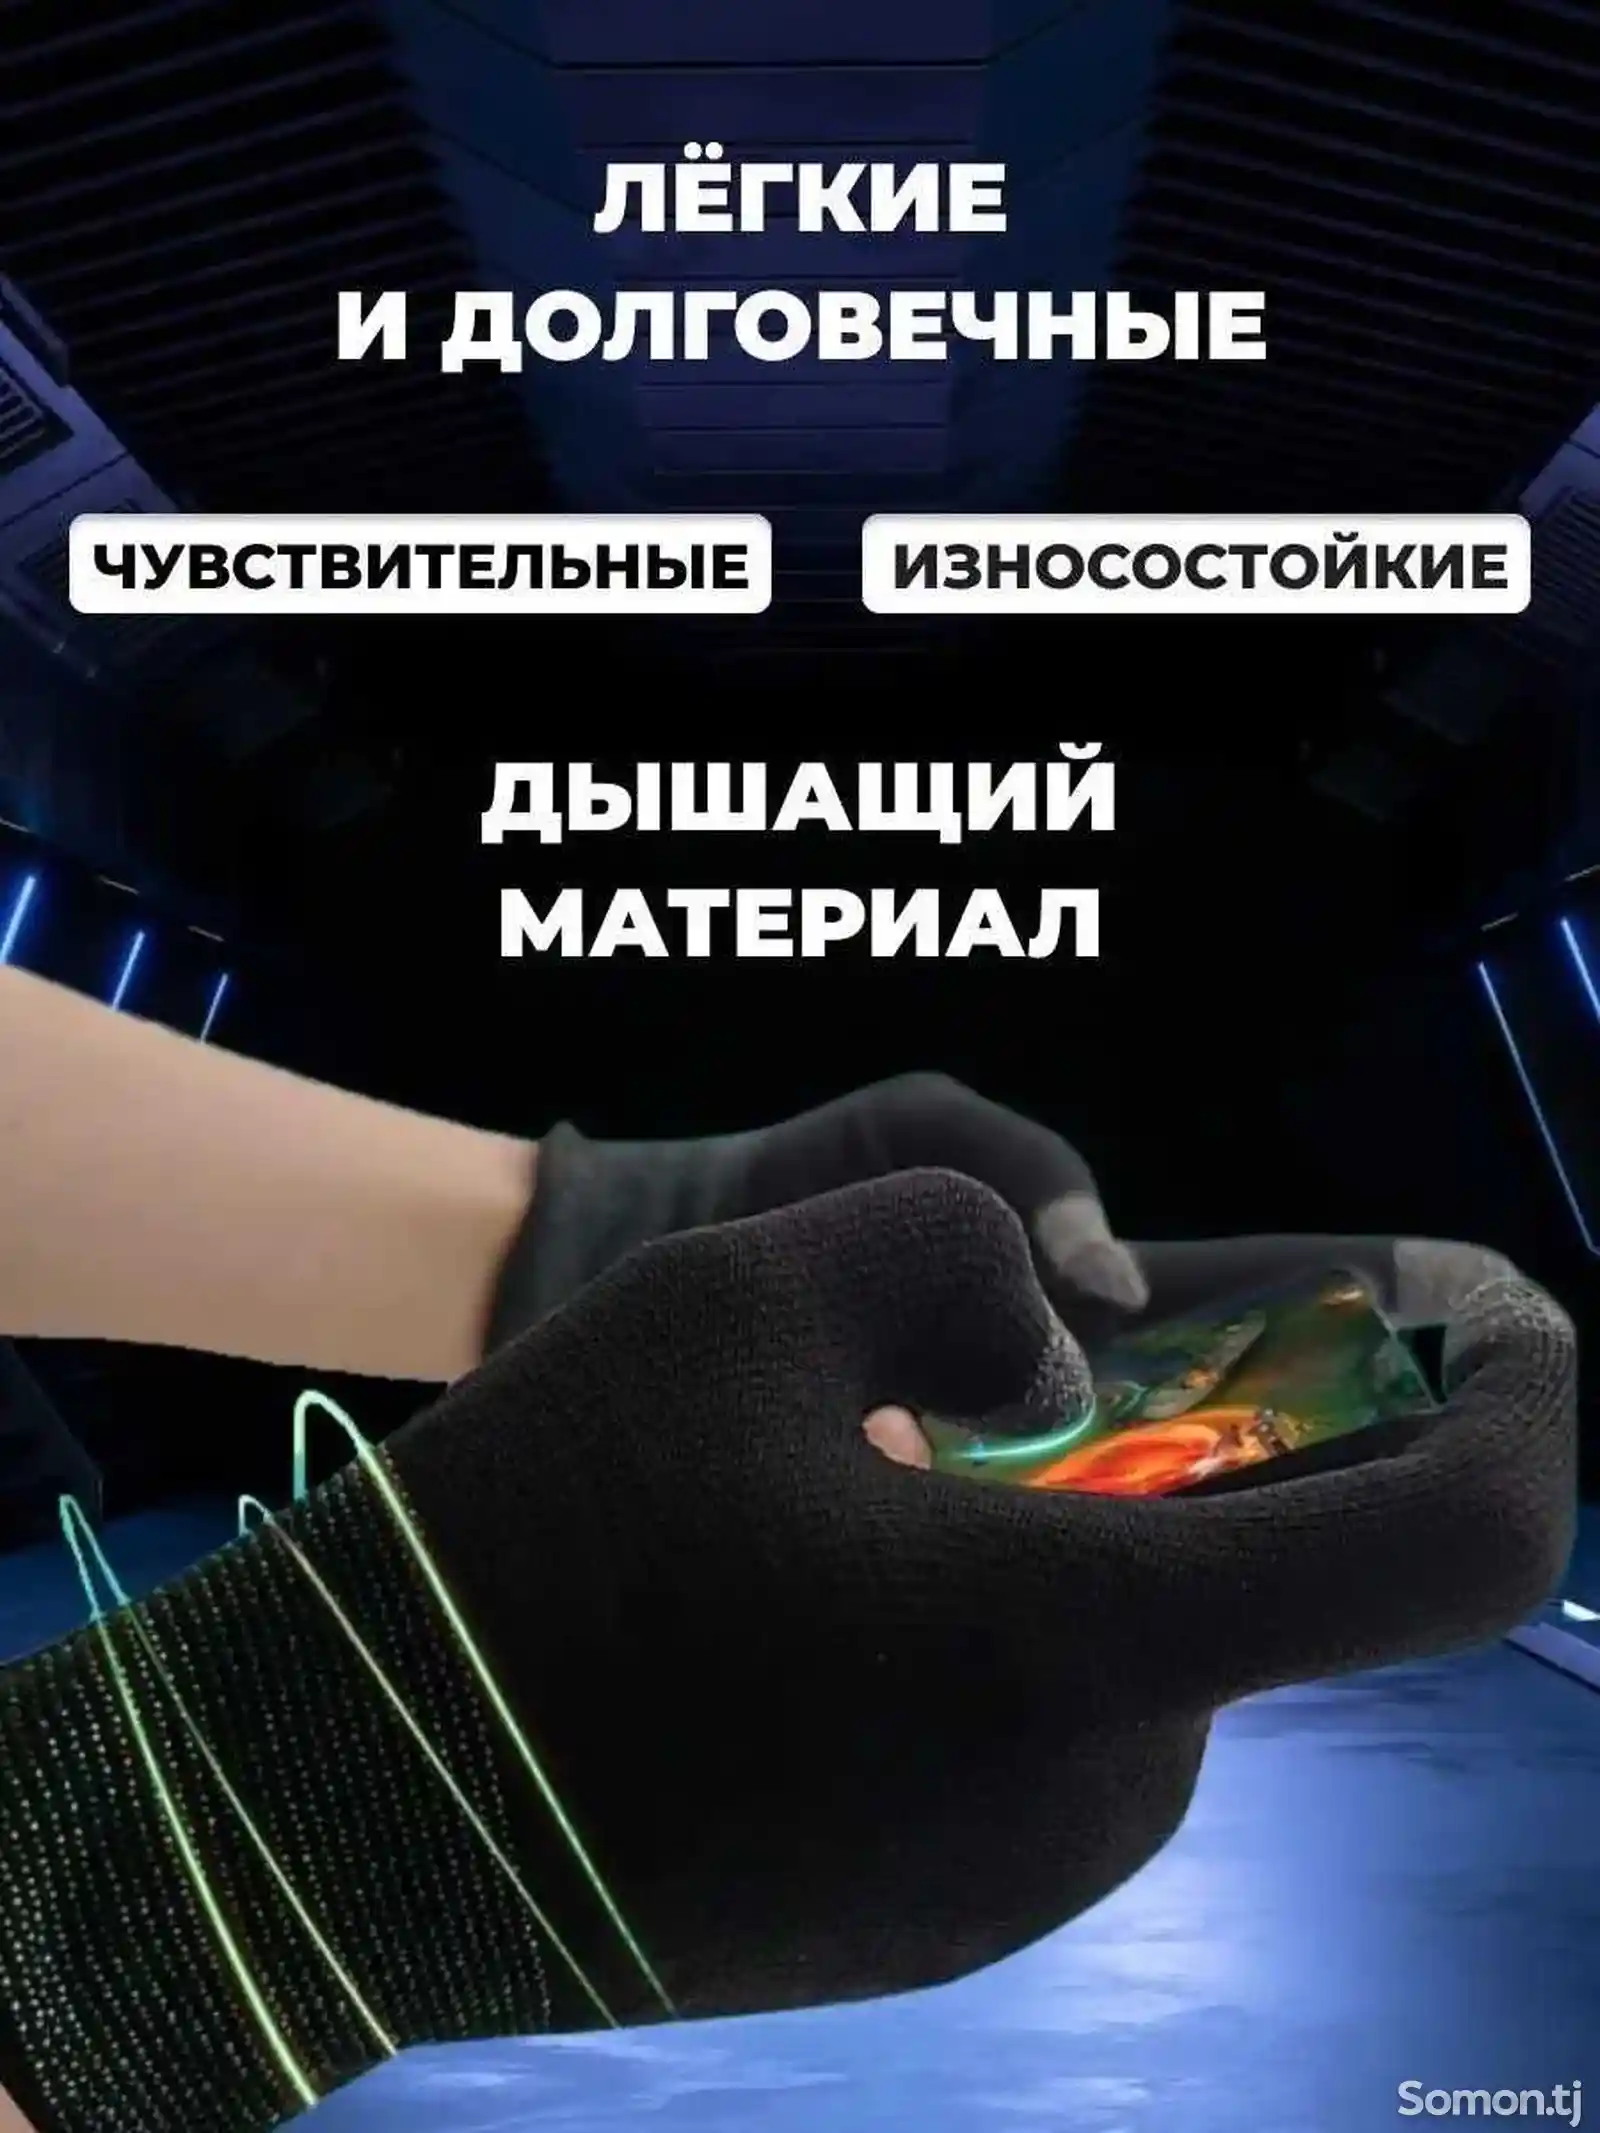 Игровые перчатки для телефона, напальчники для PUBG-3